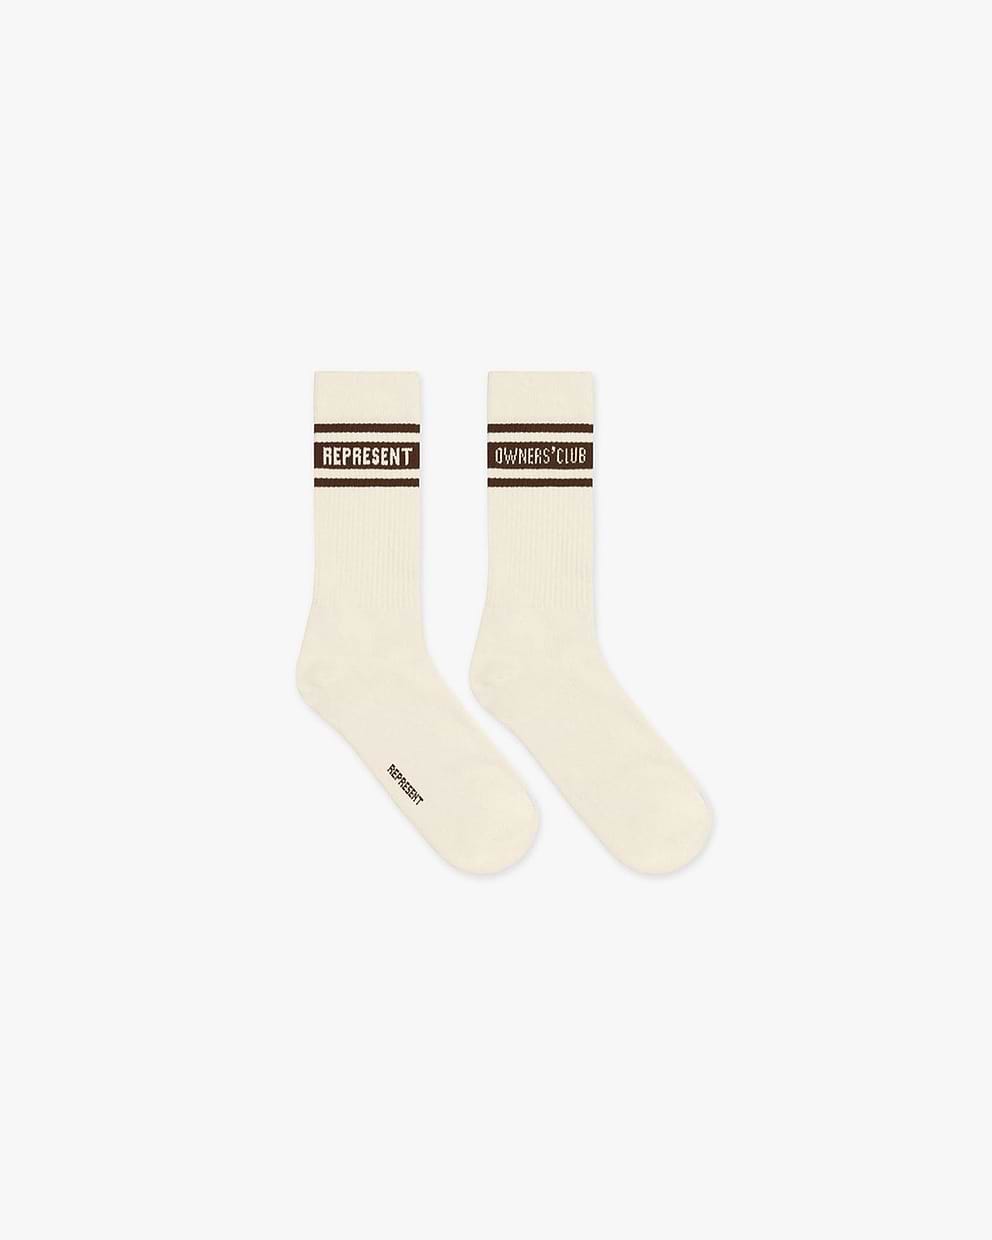 Represent Owners Club Socks - Vintage White/Vintage Brown